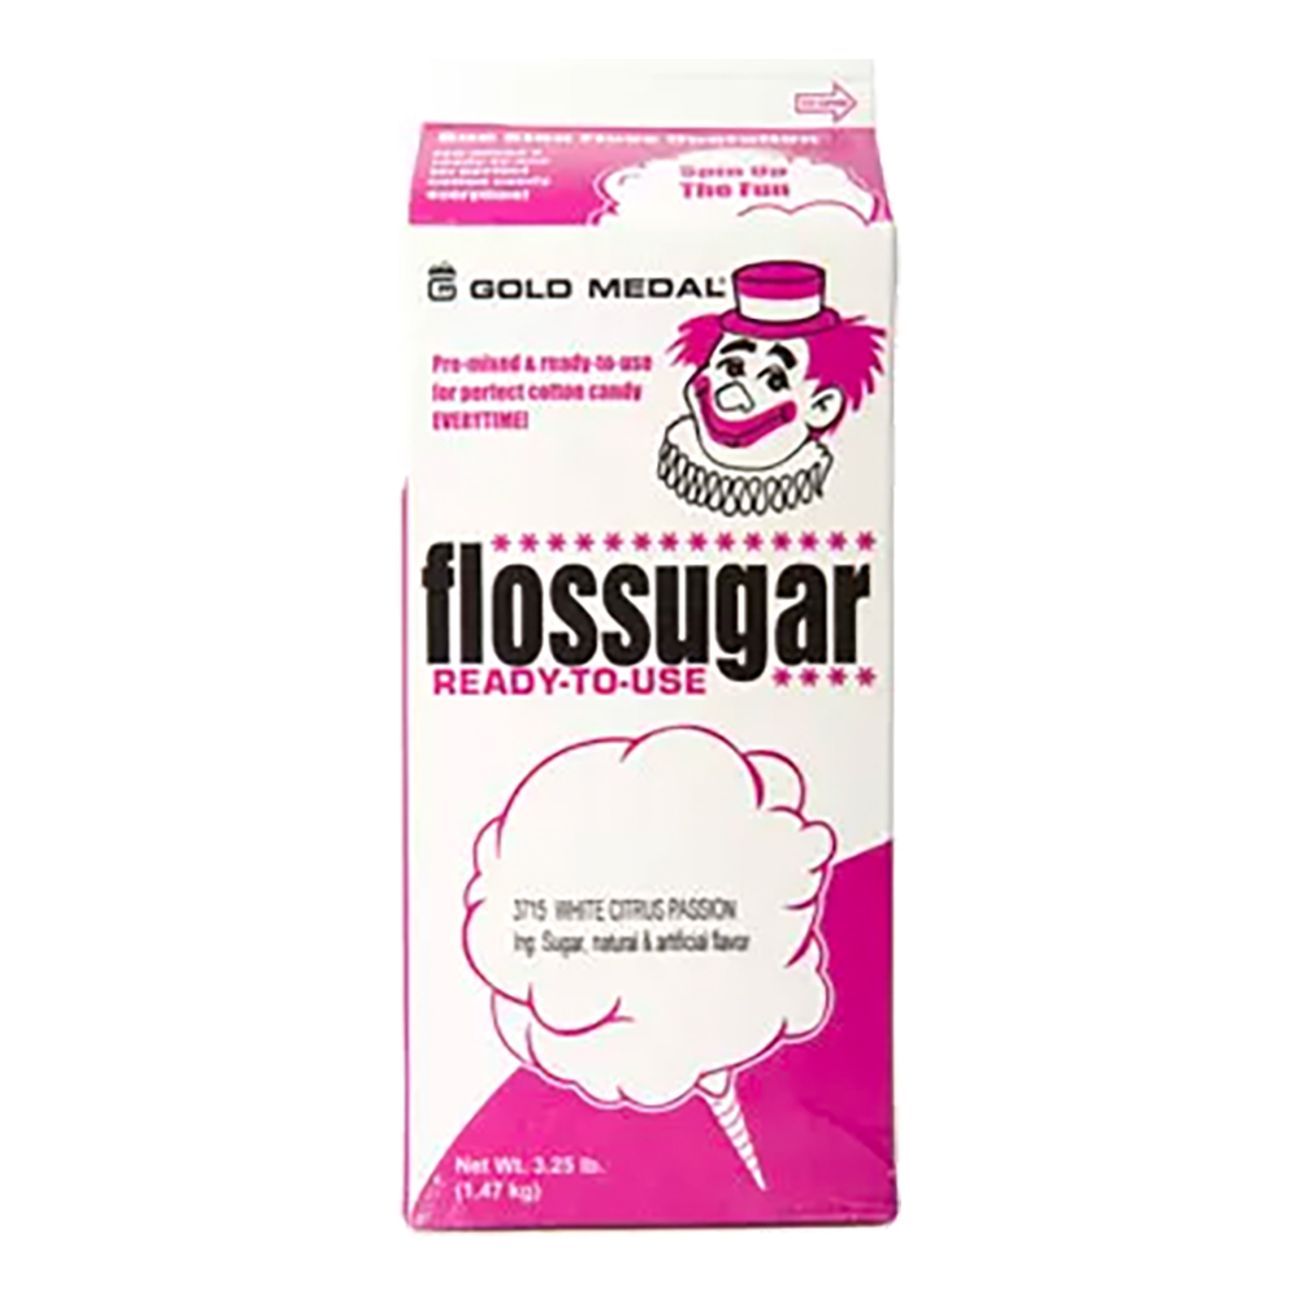 flossugar-sockervaddsmix-99813-16